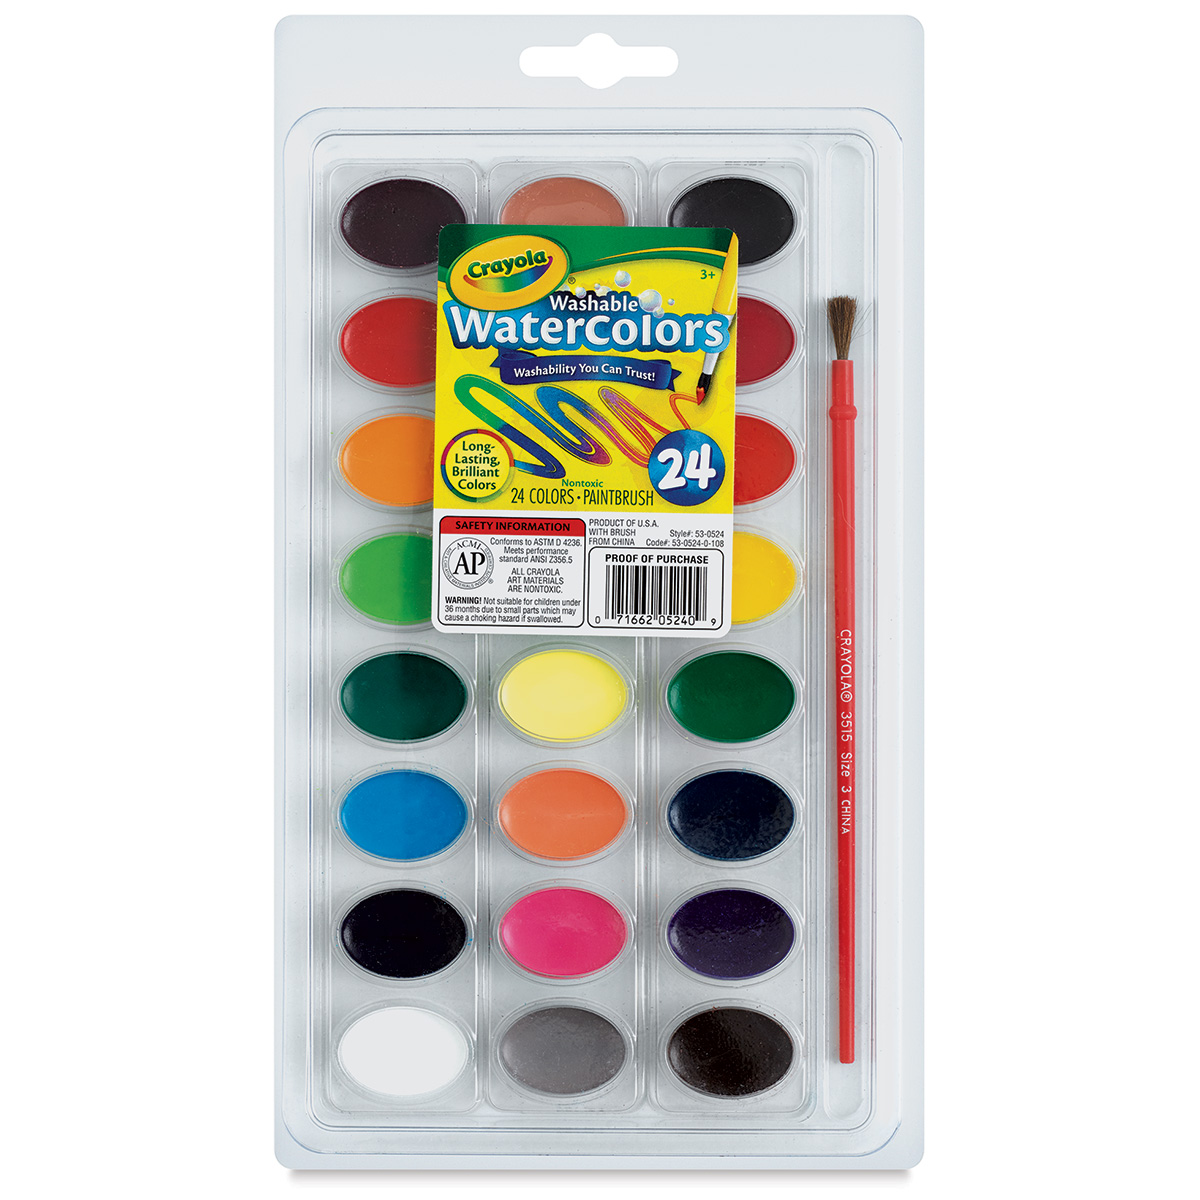 Crayola Washable Watercolor Pan Sets | Blick Art Materials